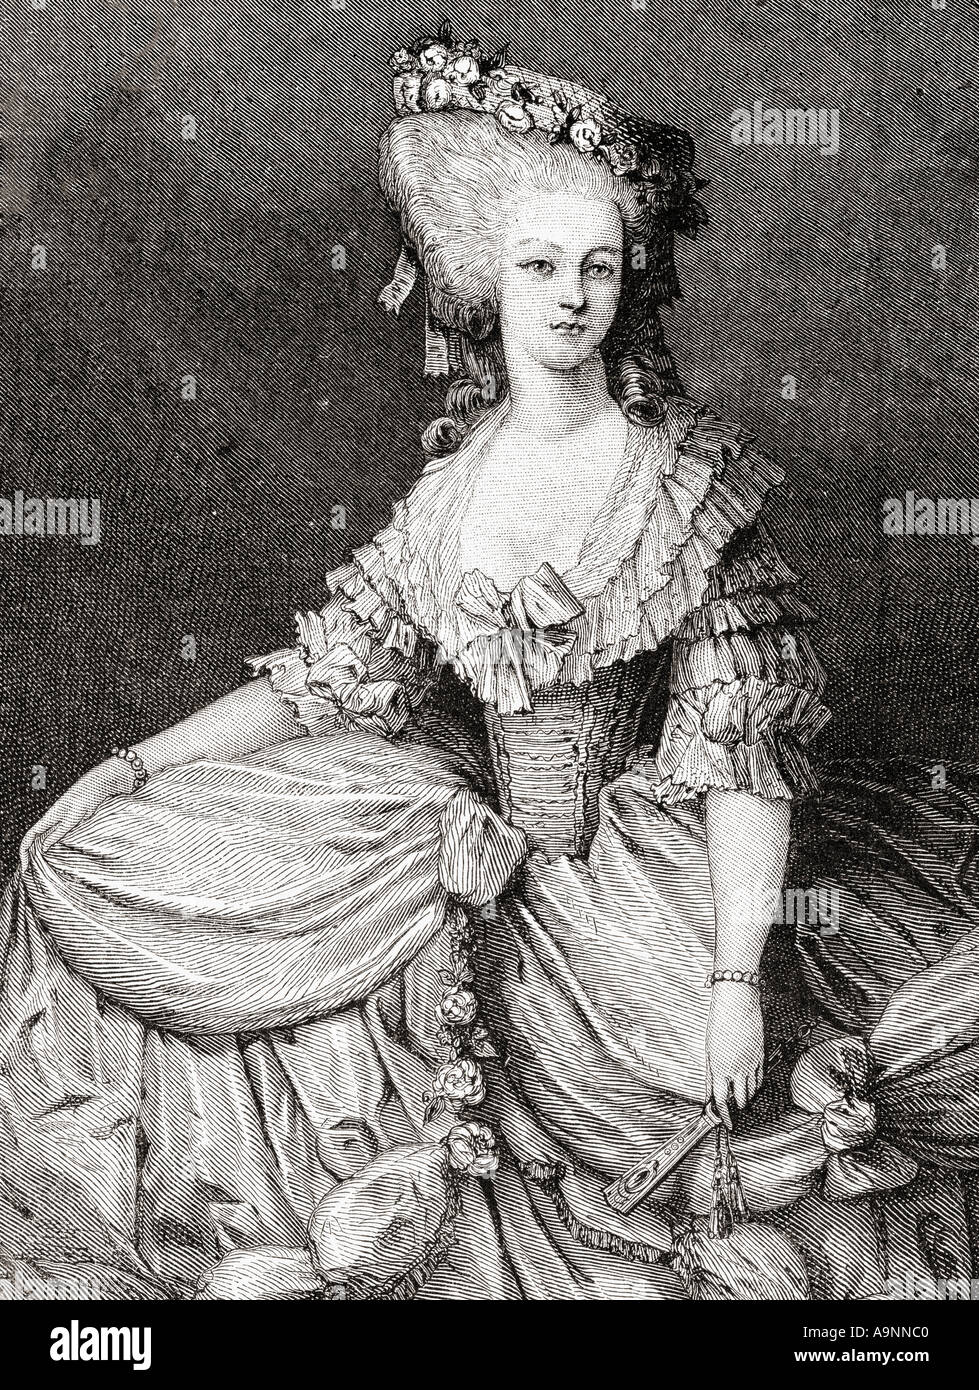 Marie-Louise Thérèse von Savoy-Carignan, Princesse de Lamballe, 1749 - 1792. Intime Begleiter von Marie Antoinette. Stockfoto